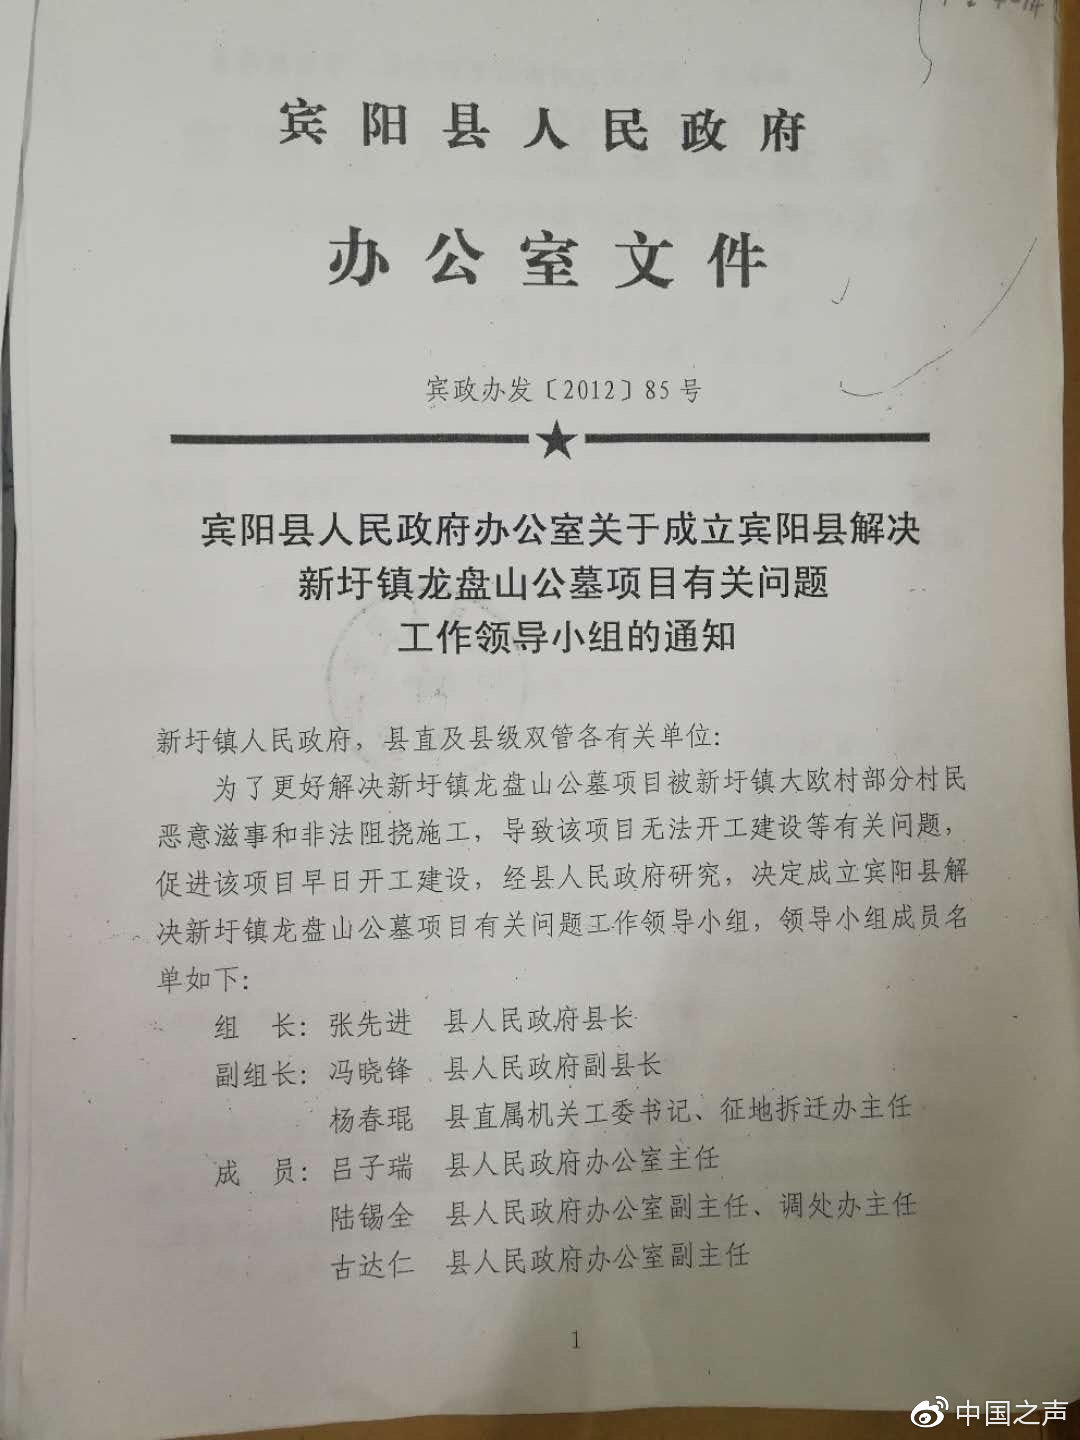 宾阳县政府曾组织专项小组解决问题